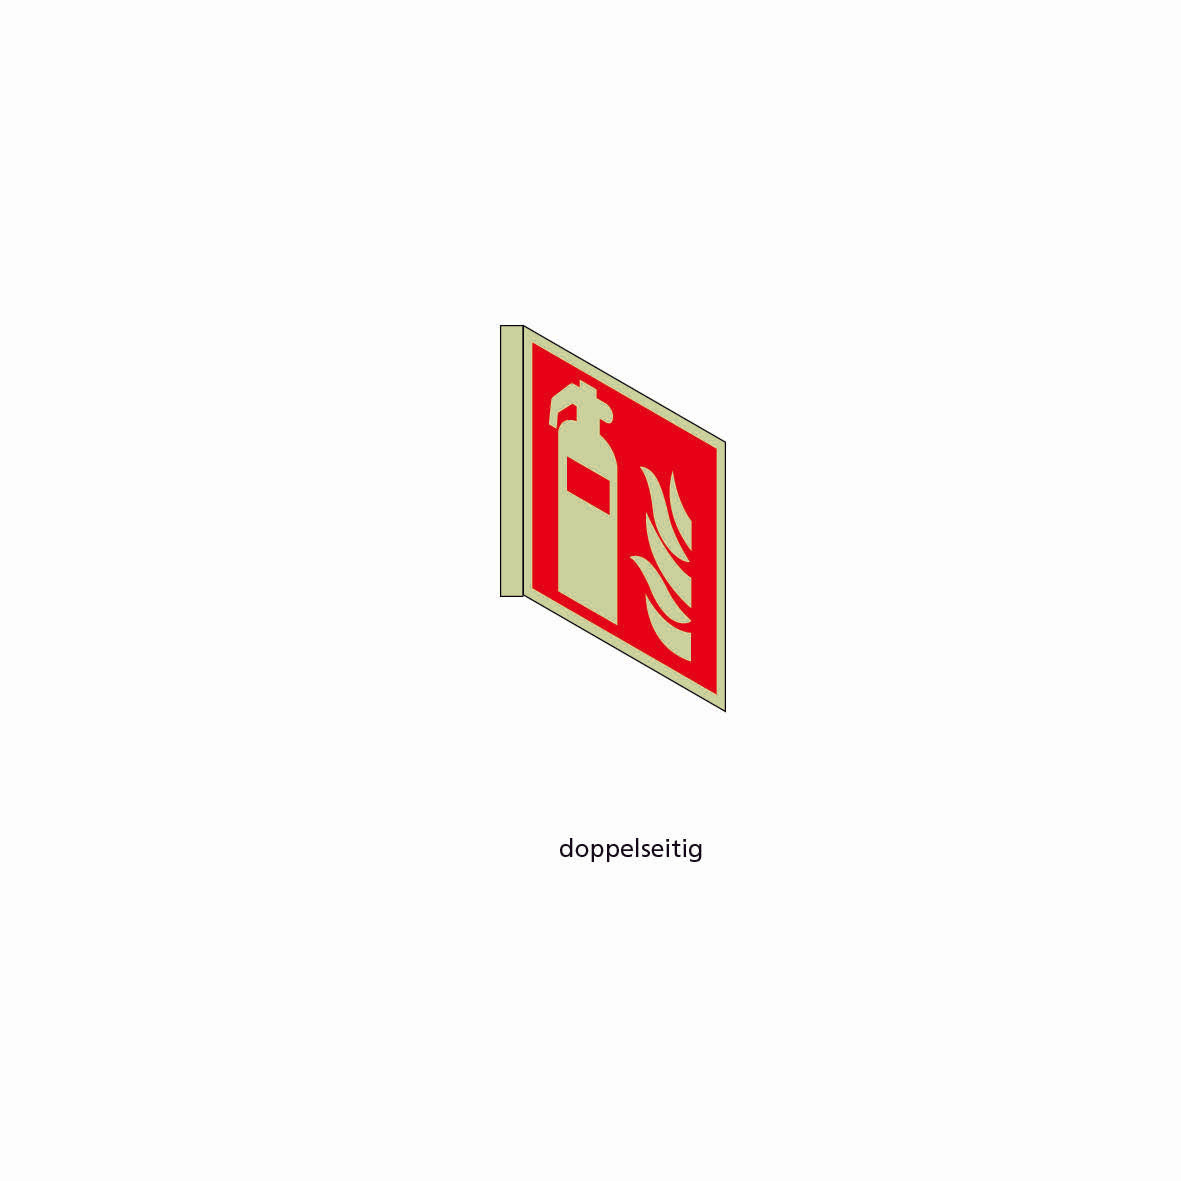 Fahnenschild doppelseitig, Rettungs- und Brandschutzzeichen, nachleuchtend, PK,  150 x 150 mm, gemäss Logobibliothek